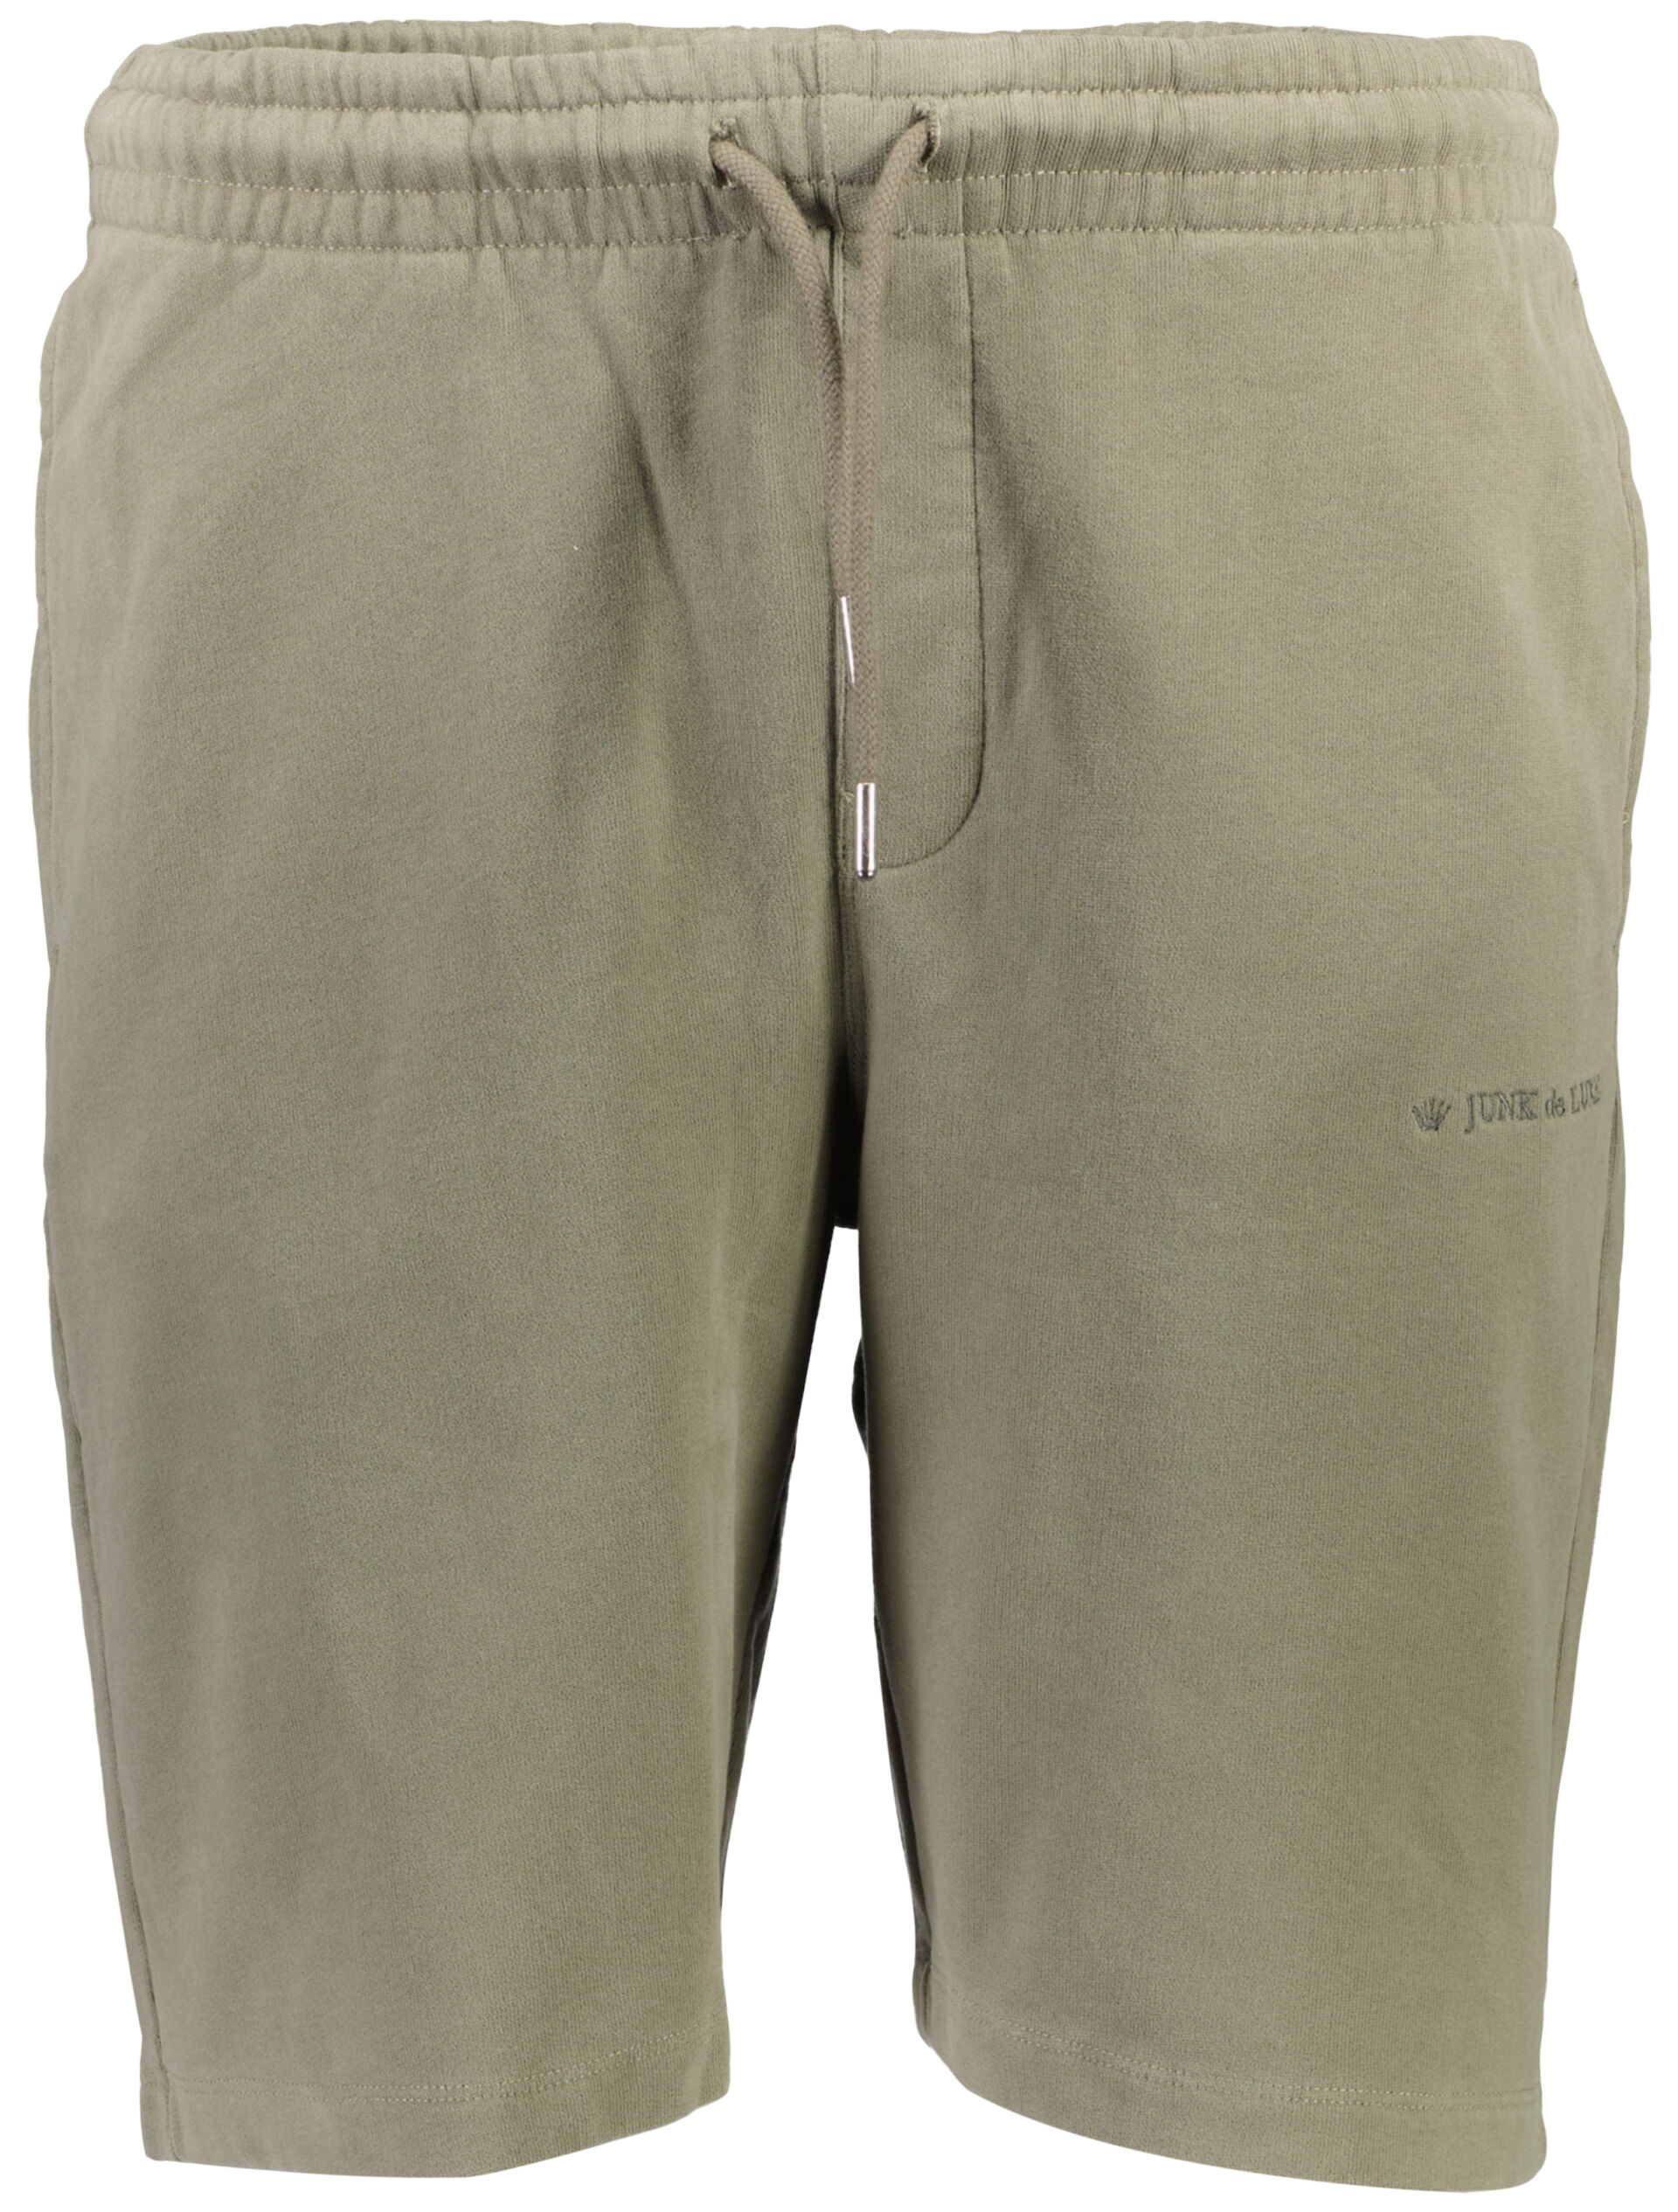 Casual shorts Casual shorts Green 60-532020